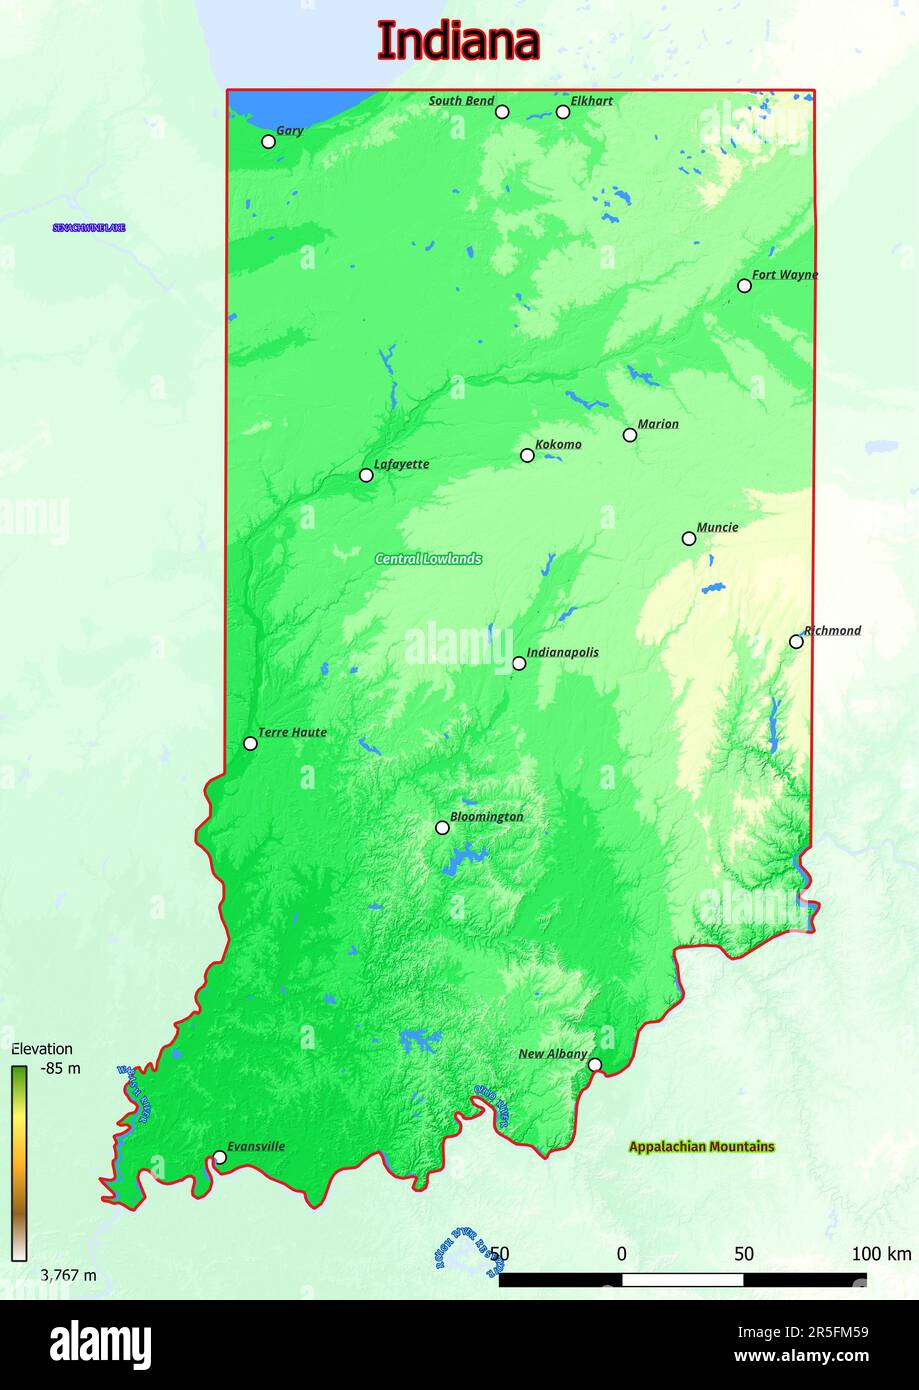 La mappa fisica dell'Indiana mostra le caratteristiche di forma landform quali montagne, colline, pianure, ponti, fiumi, laghi Foto Stock